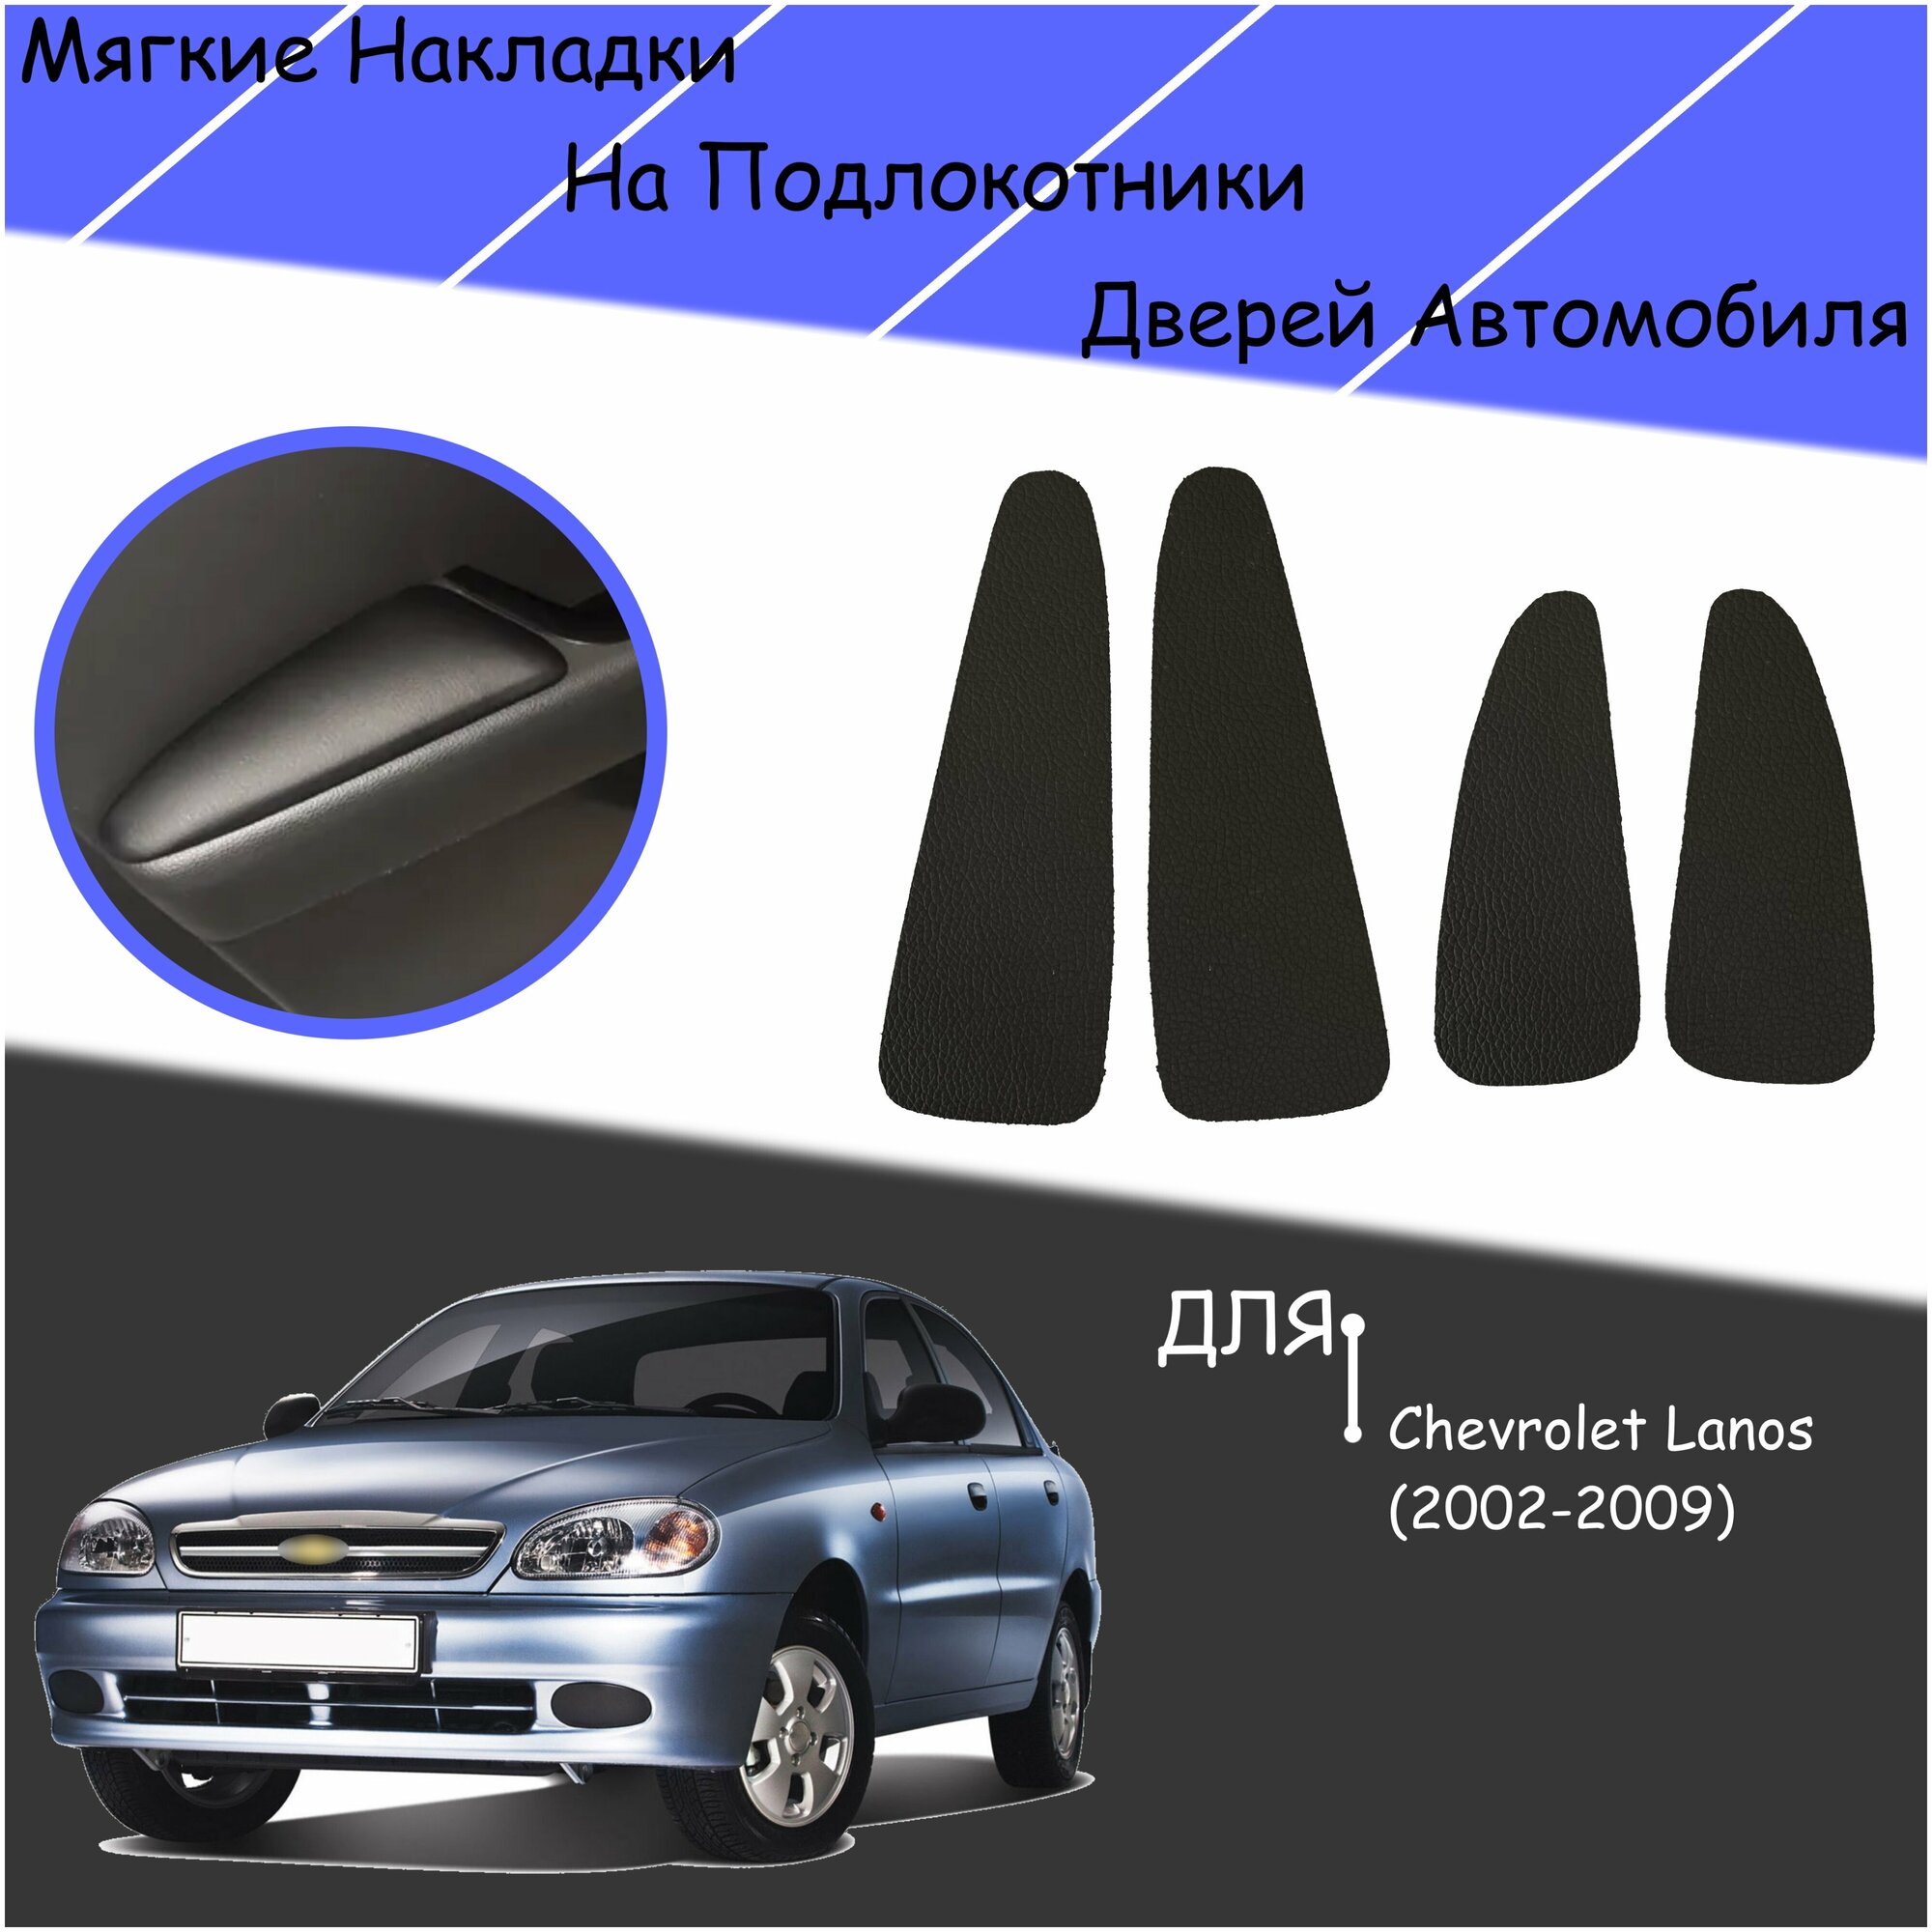 Дверные Подлокотники из экокожи на двери (Мягкие накладки) для Шевролет Ланос / Chevrolet Lanos (2002-2009) (4 шт) Чёрные